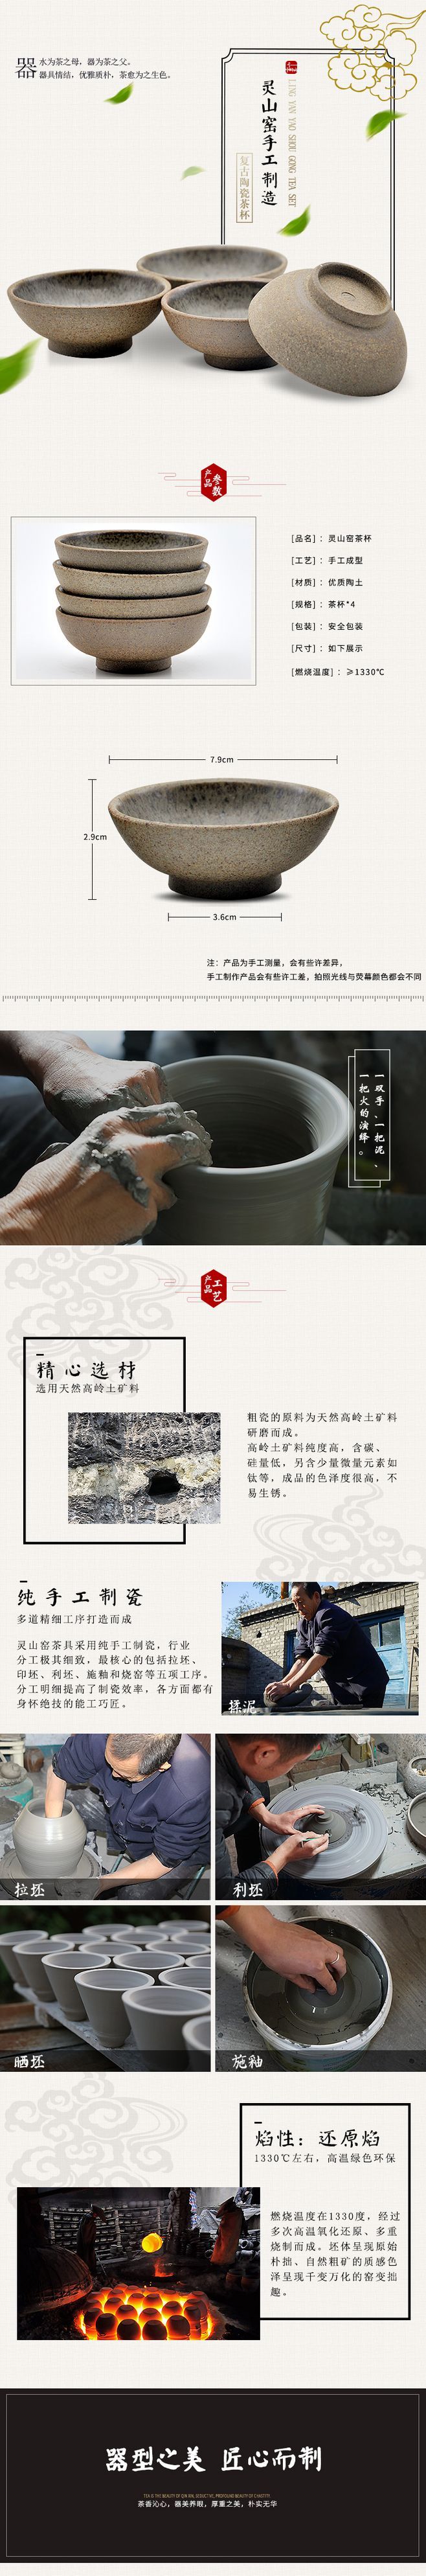 淘宝美工亚丁中国风茶杯详情设计作品